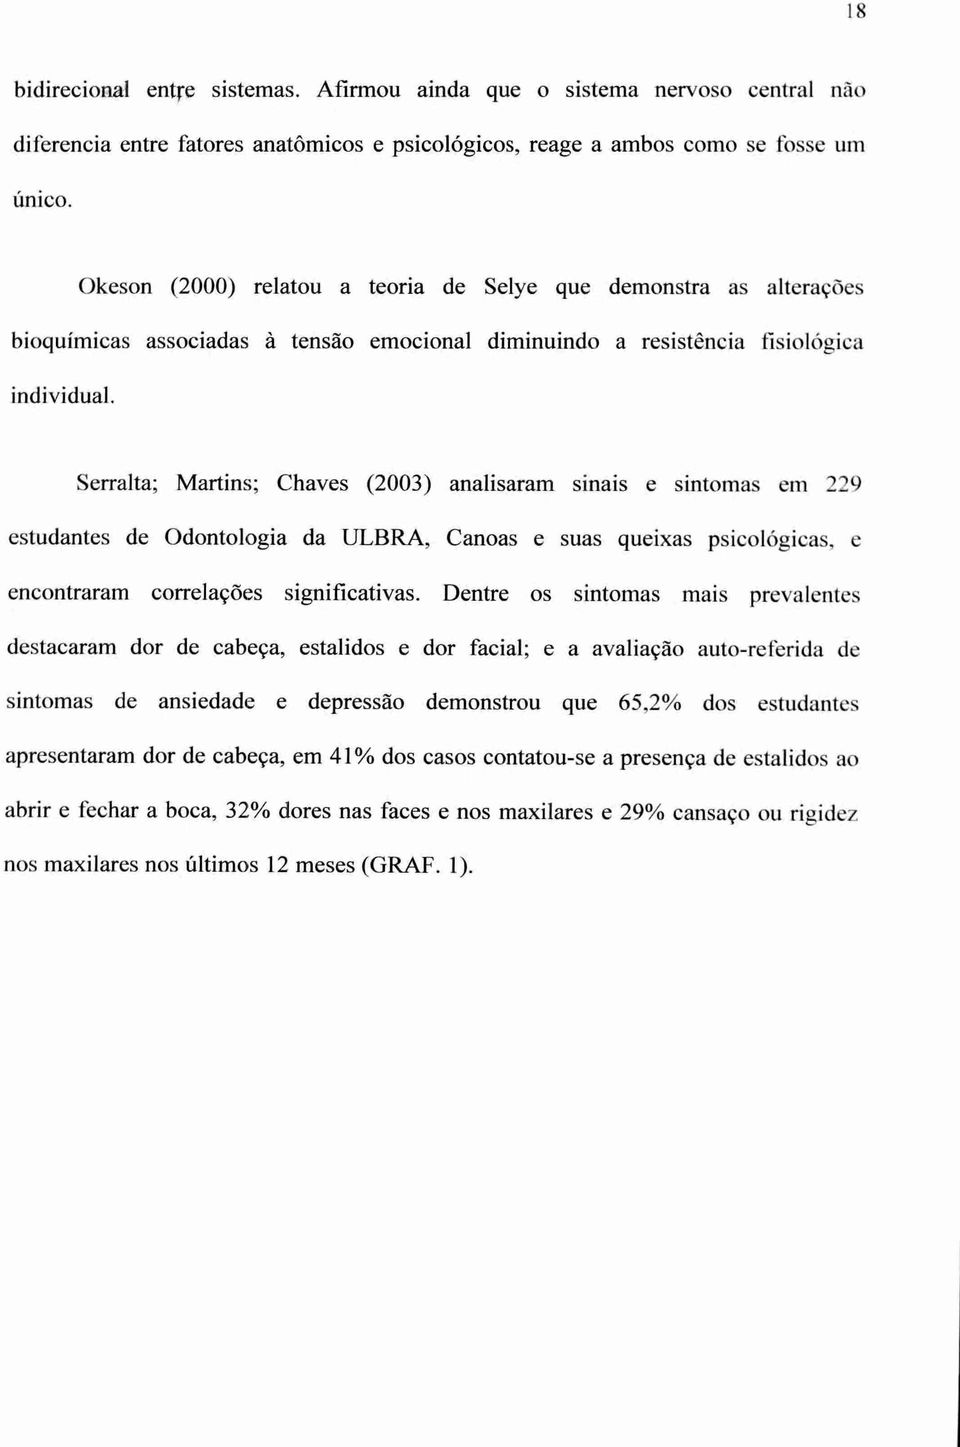 Serralta; Martins; Chaves (2003) analisaram sinais e sintomas em 229 estudantes de Odontologia da ULBRA, Canoas e suas queixas psicológicas, e encontraram correlações significativas.